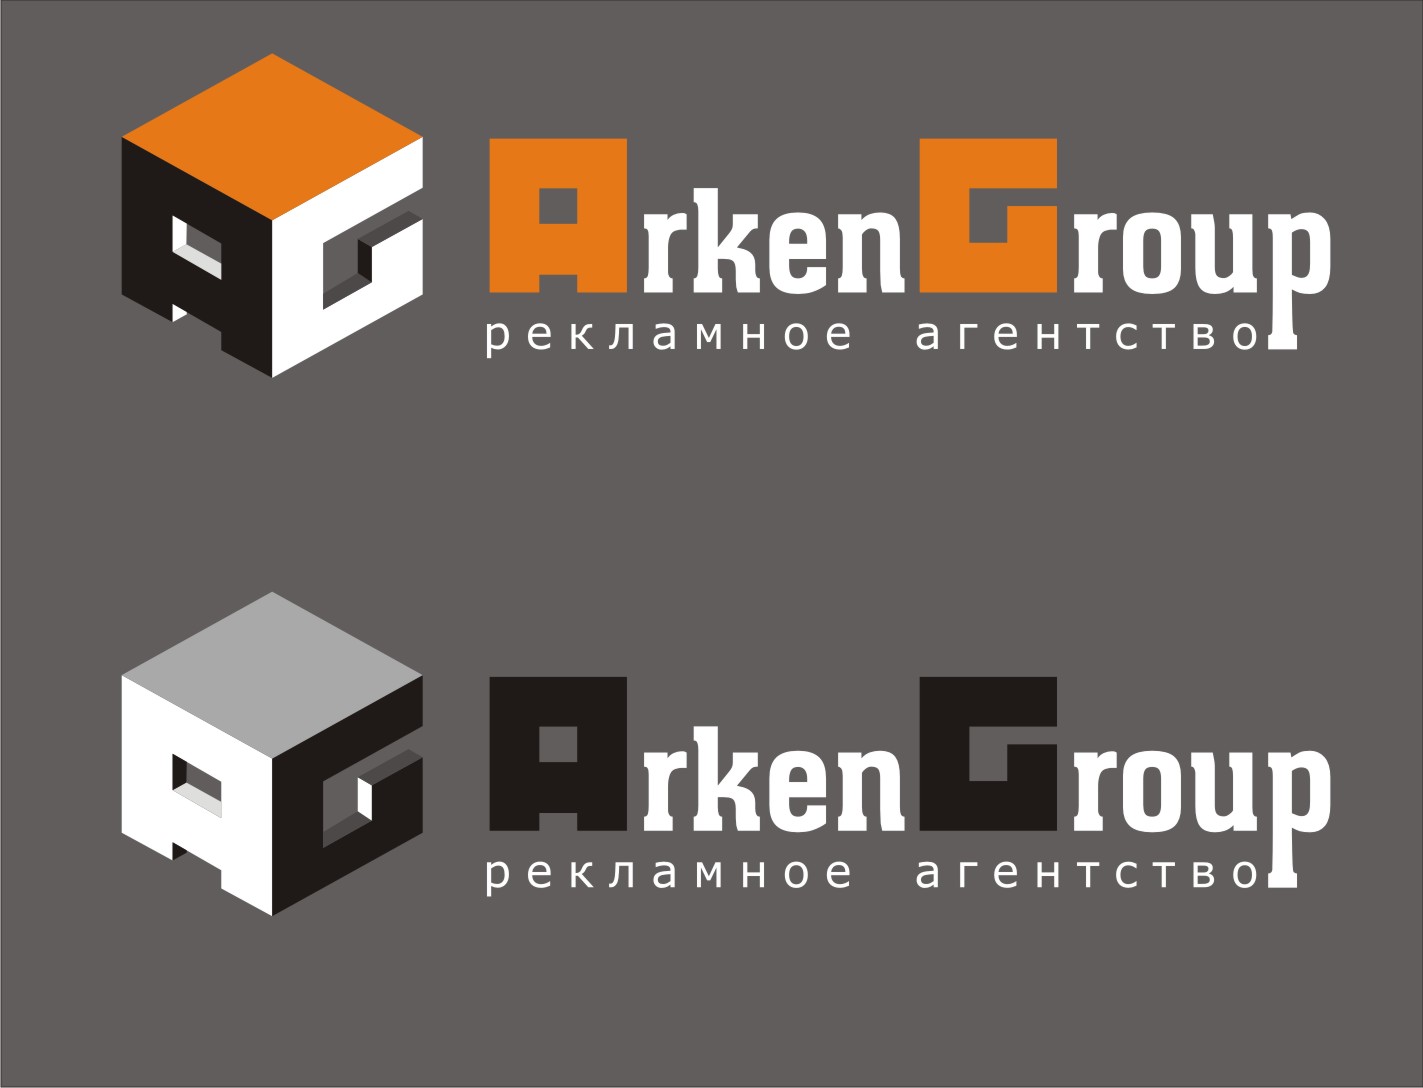 ArkenGroup